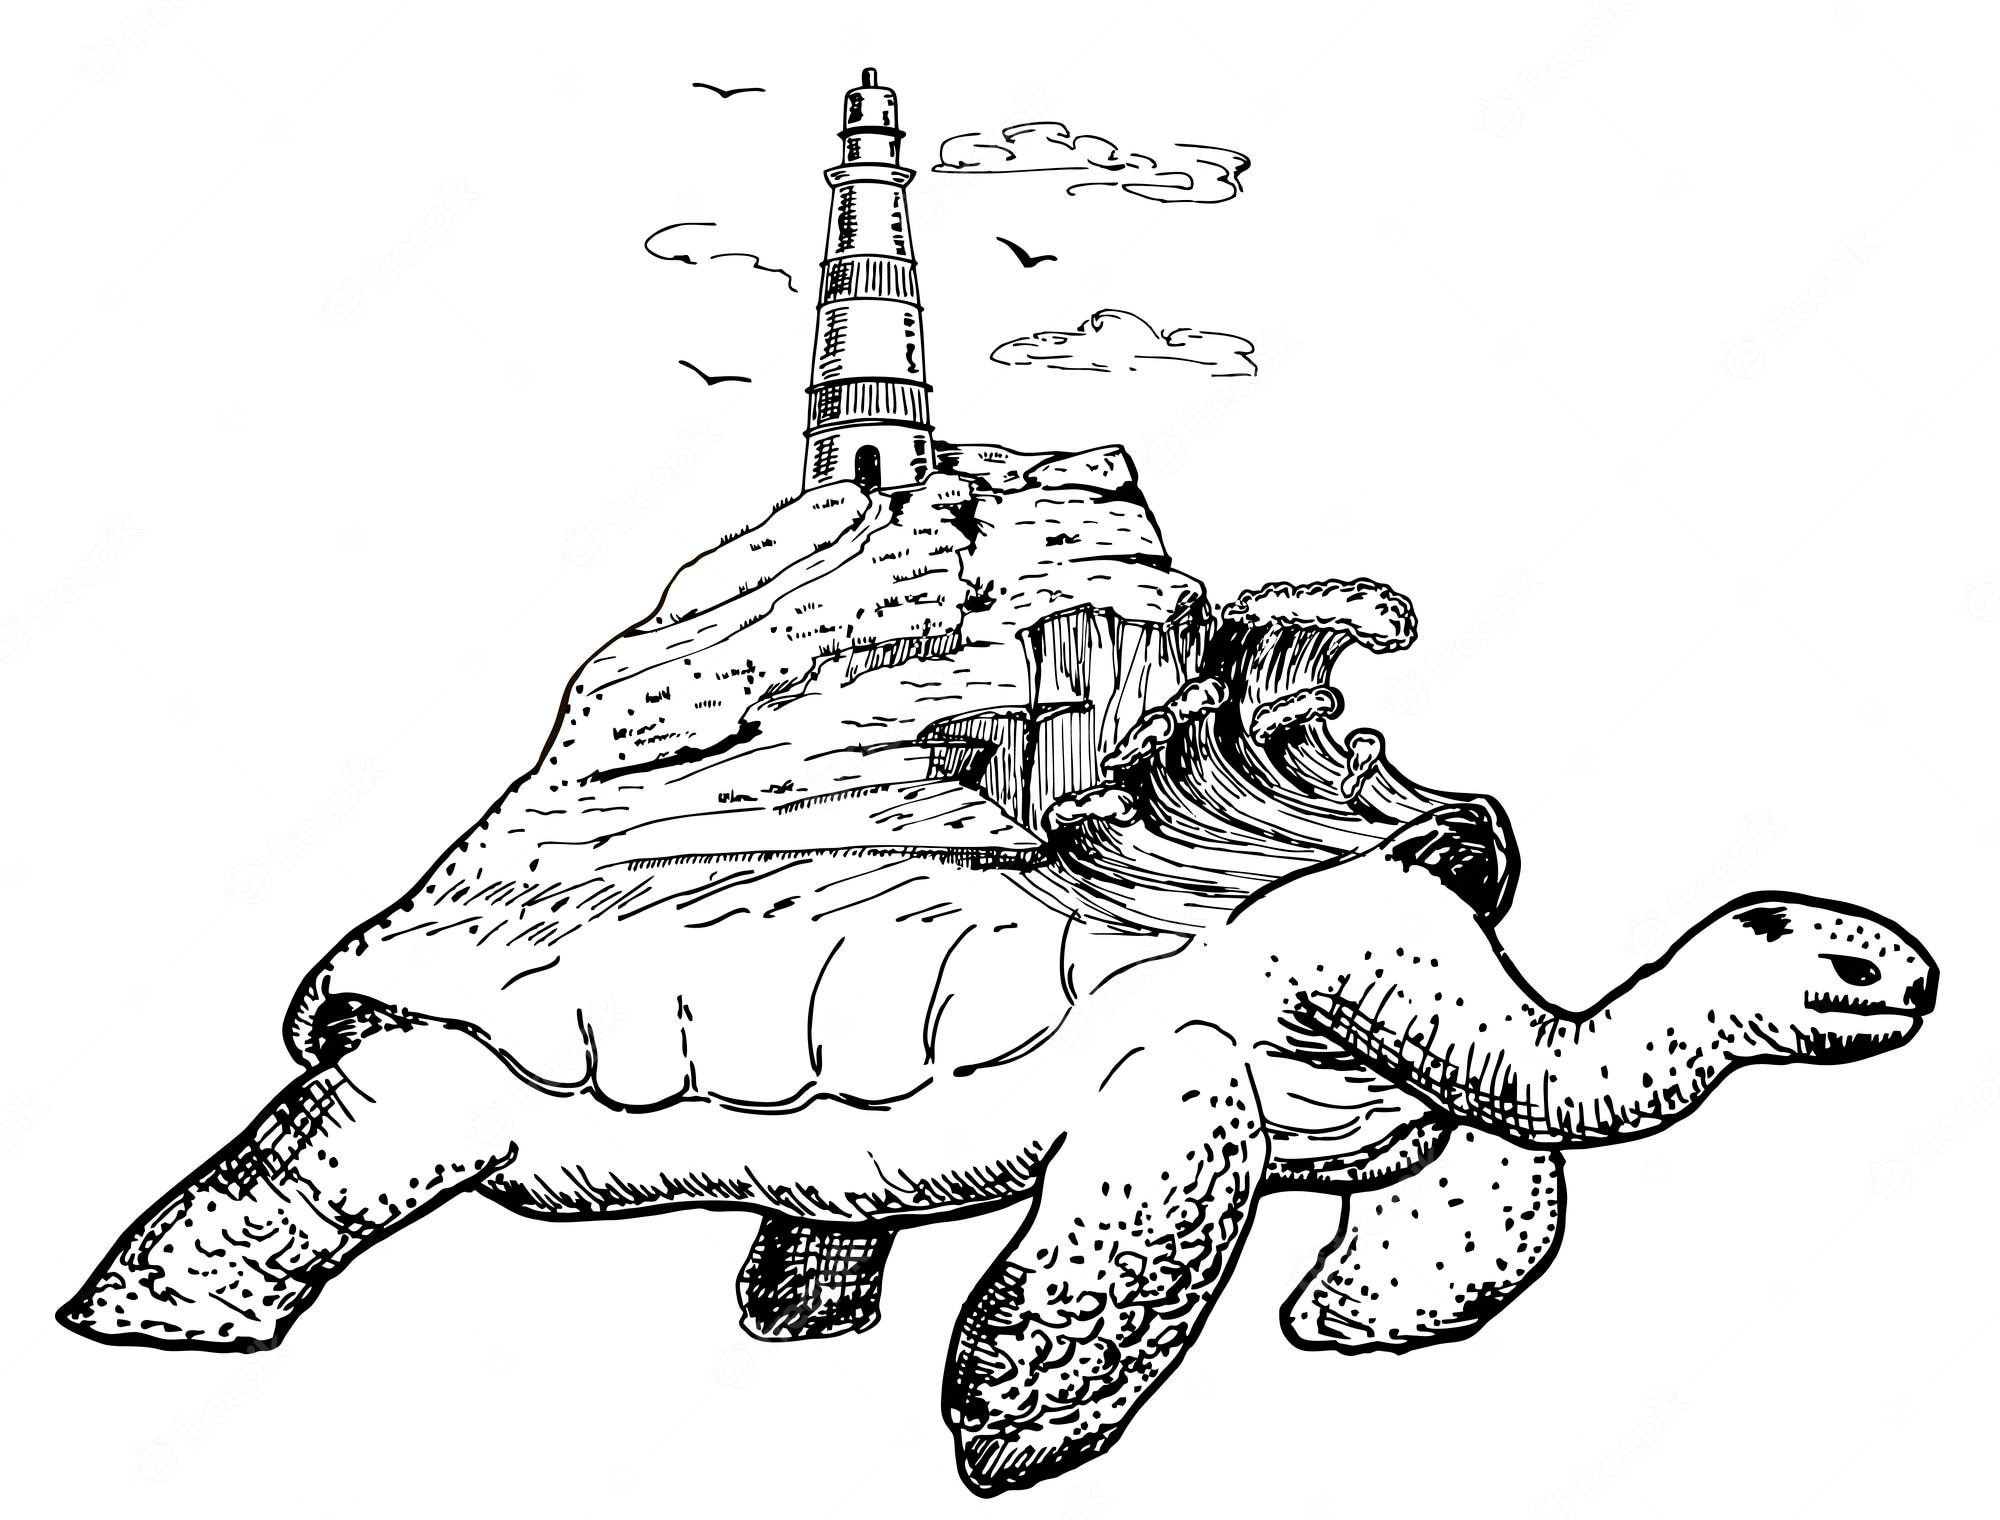 Turtle mit leuchtturm